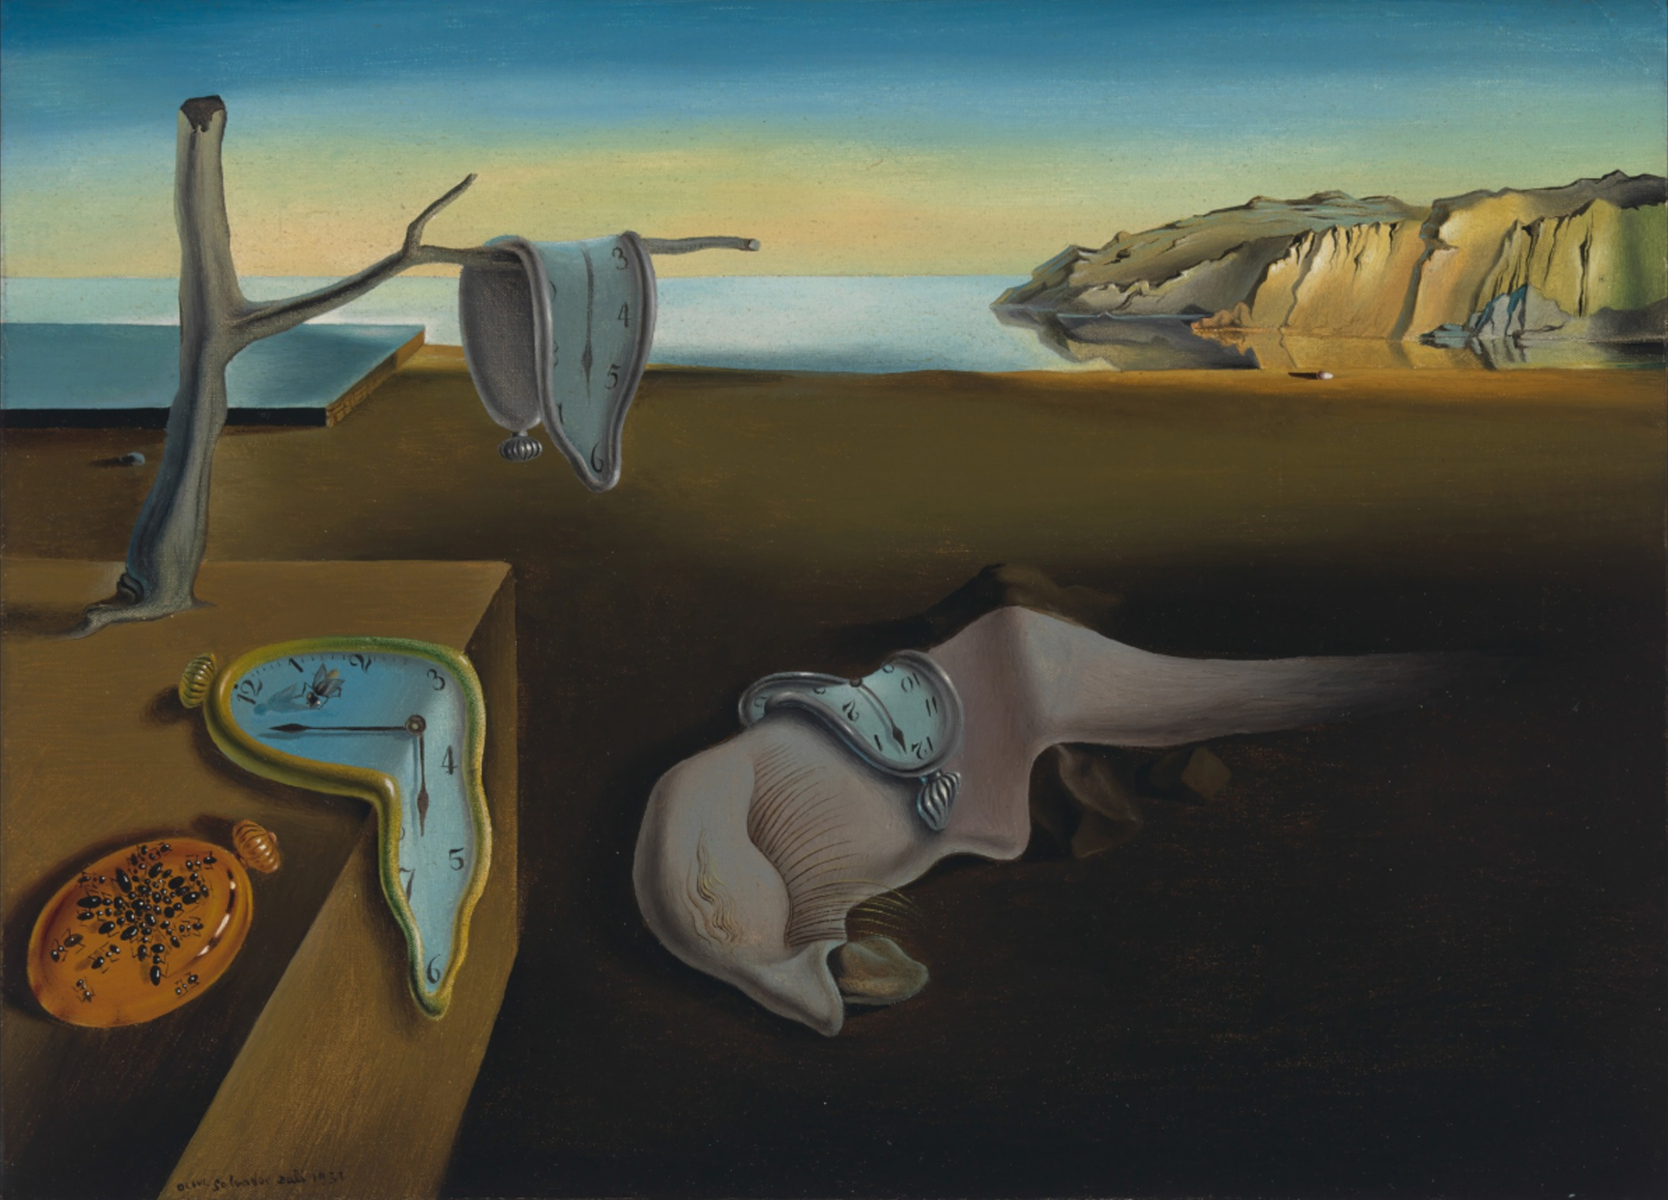 La Persistenza della Memoria © 2020 Salvador Dalí, Gala-Salvador Dalí Foundation : Artists Rights Society (ARS), New York